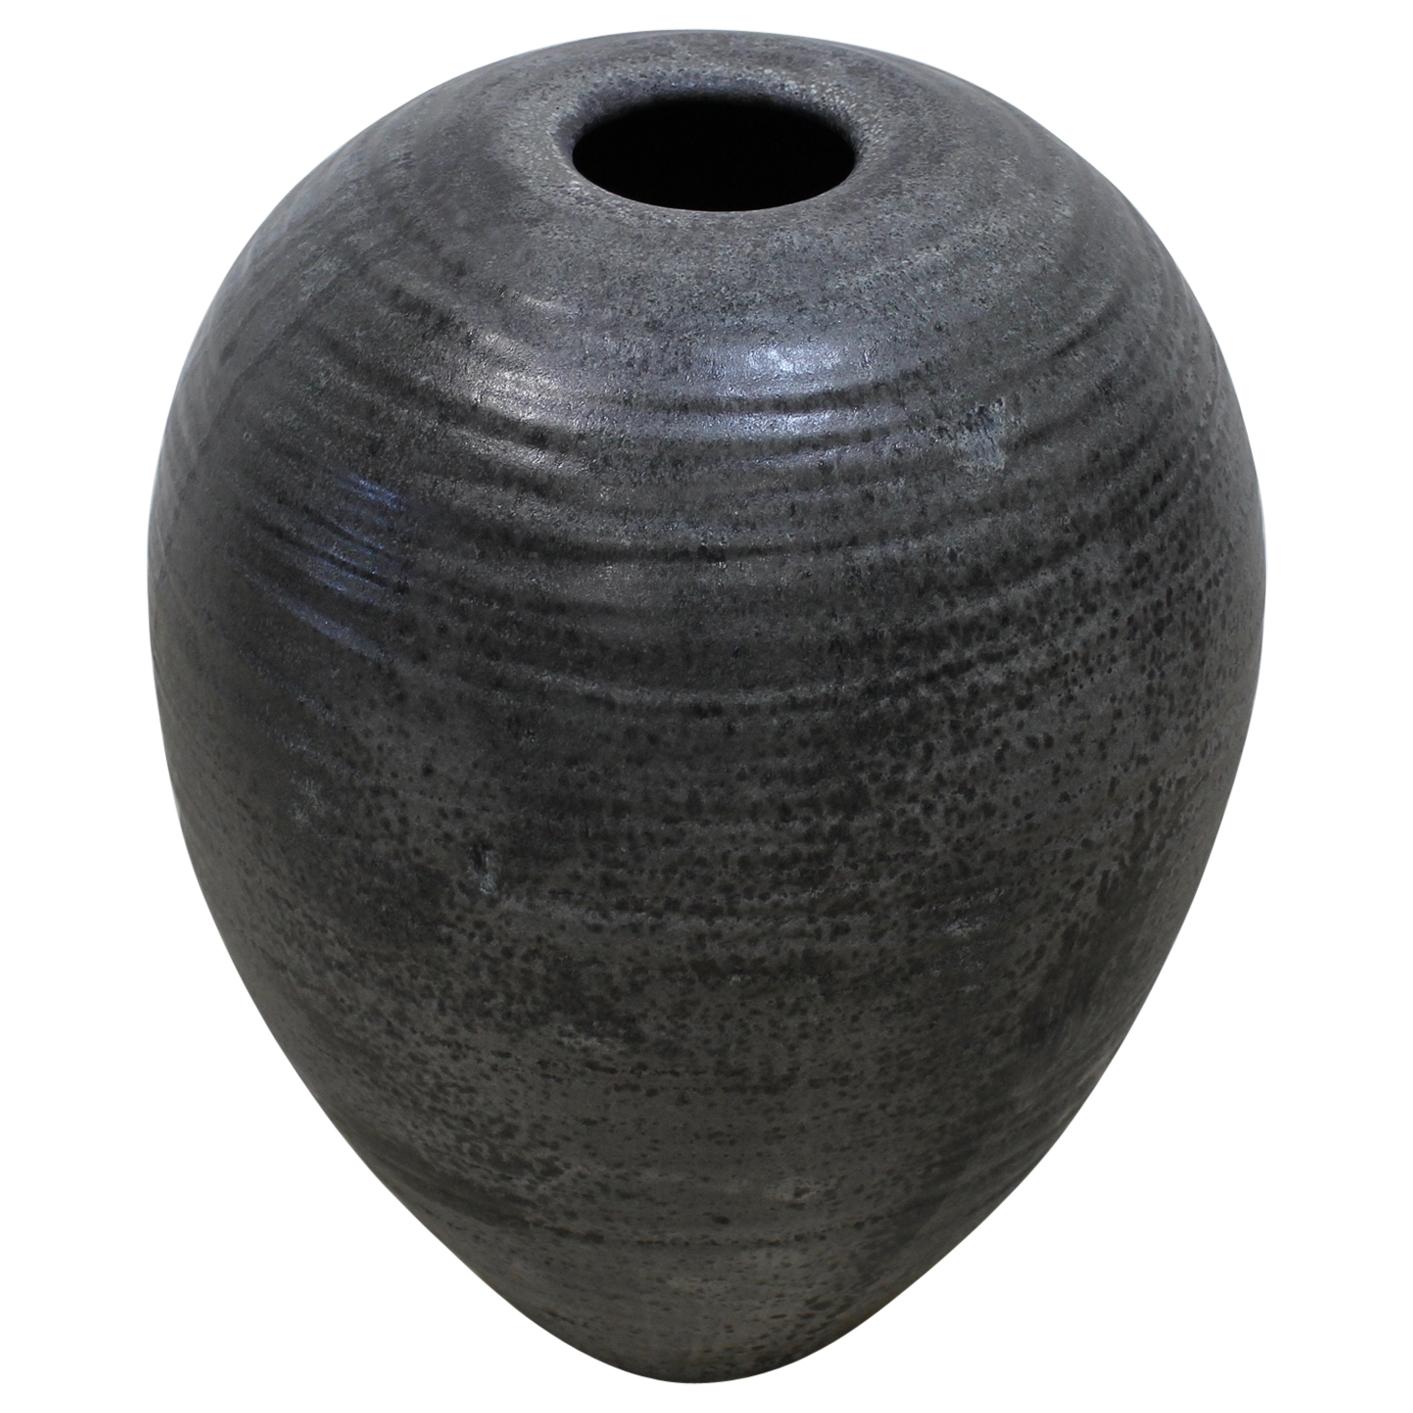 KH Würtz Textured Large Baluster Shaped Urn in Granite Glaze